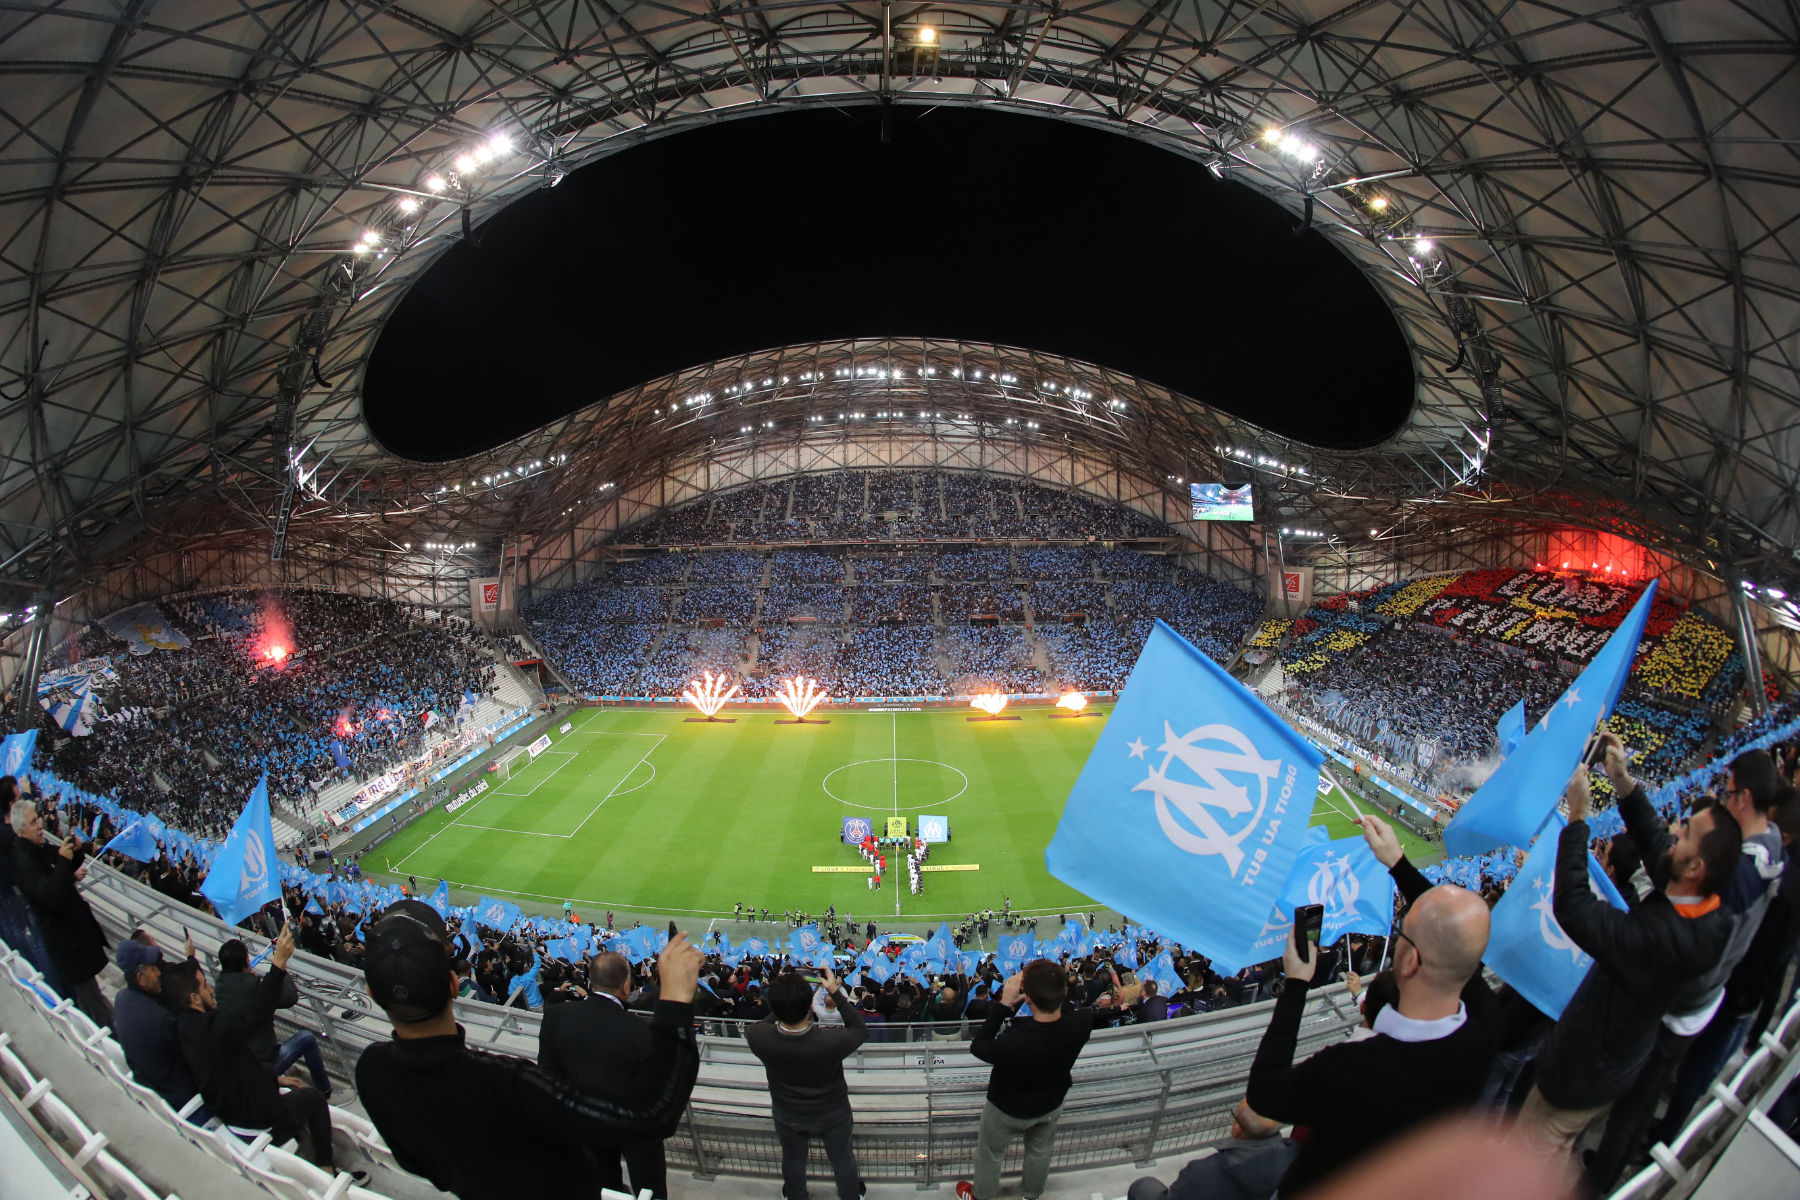 สำนักงานขายตั๋ว Marseille บอกผู้ซื้อให้อดทนกับความต้องการเข้าร่วม Le Classique กับ PSG อยู่ในระดับสูง